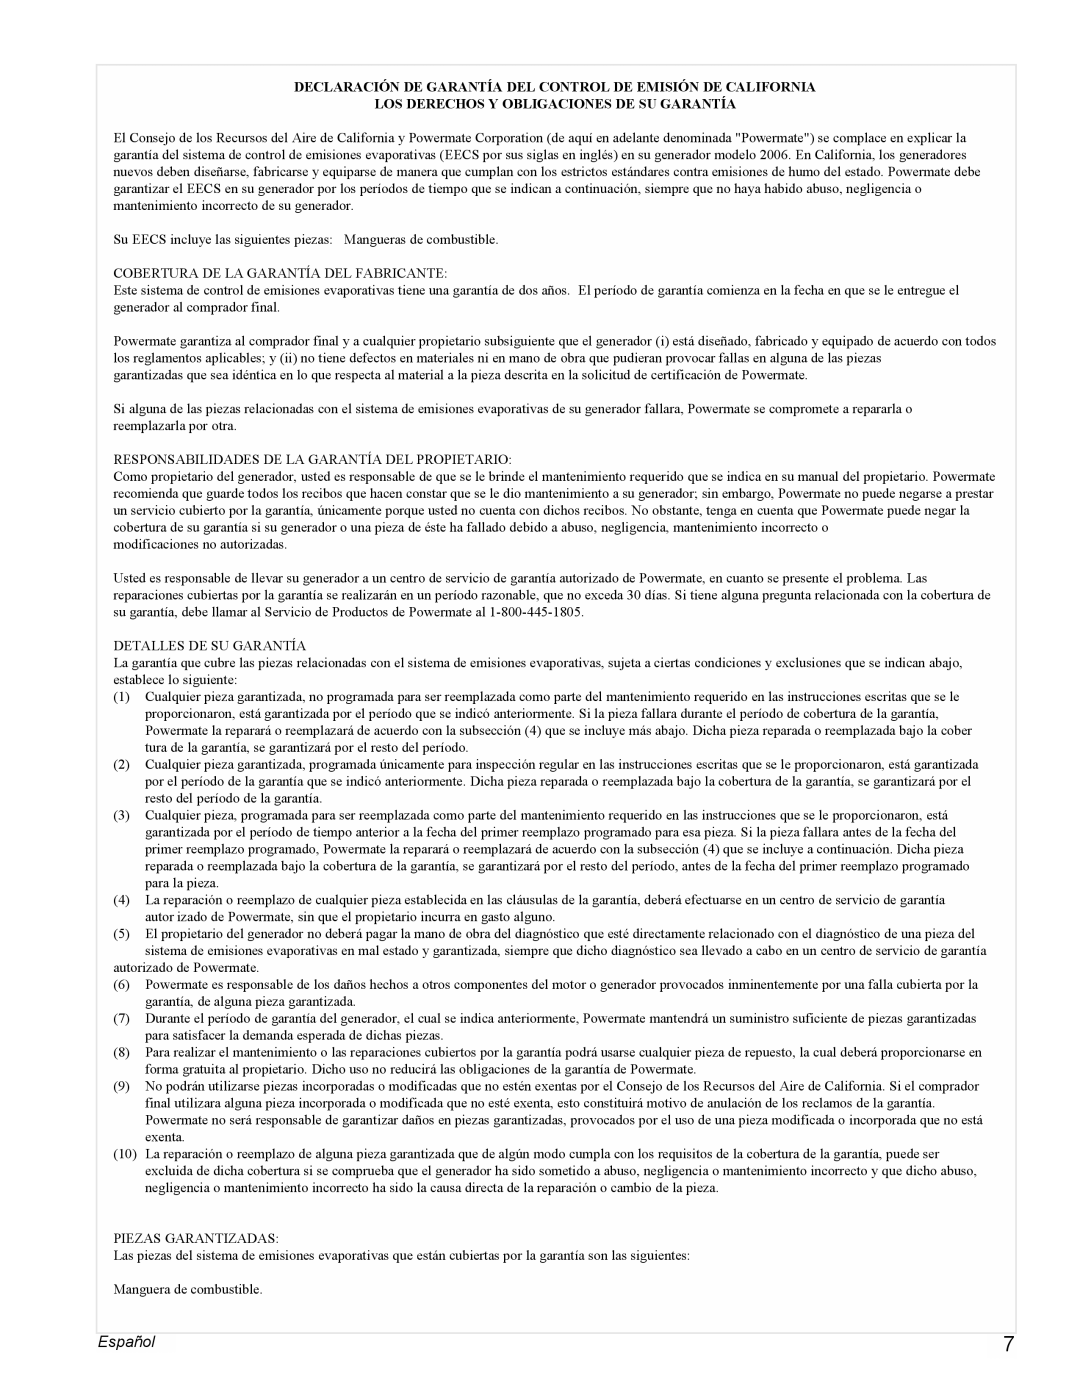 Powermate PMC523202 manual Español, Los Derechos Y Obligaciones De Su Garantía 